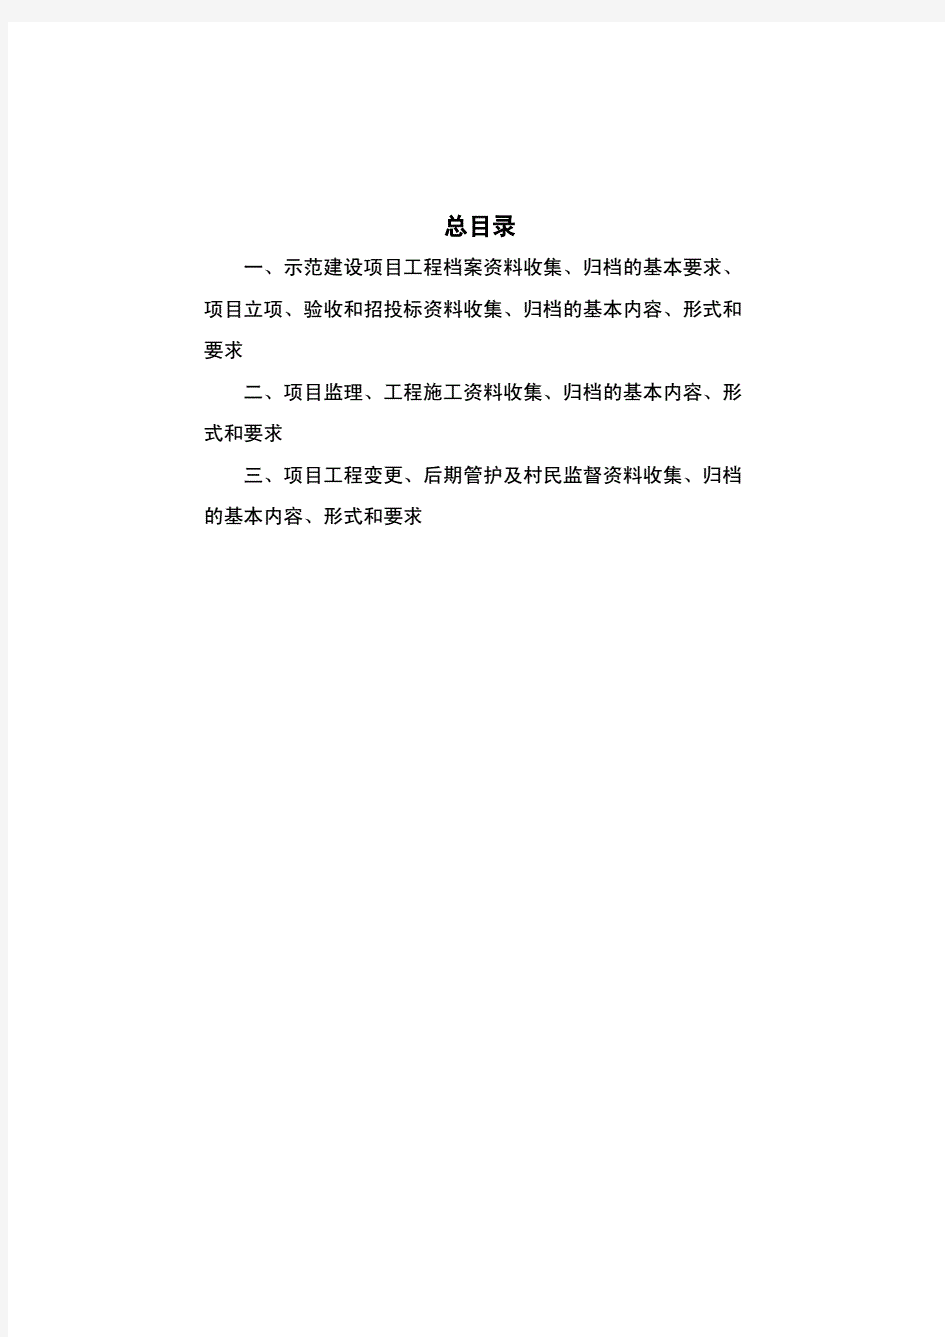 河北省土地整治项目档案收集与管理